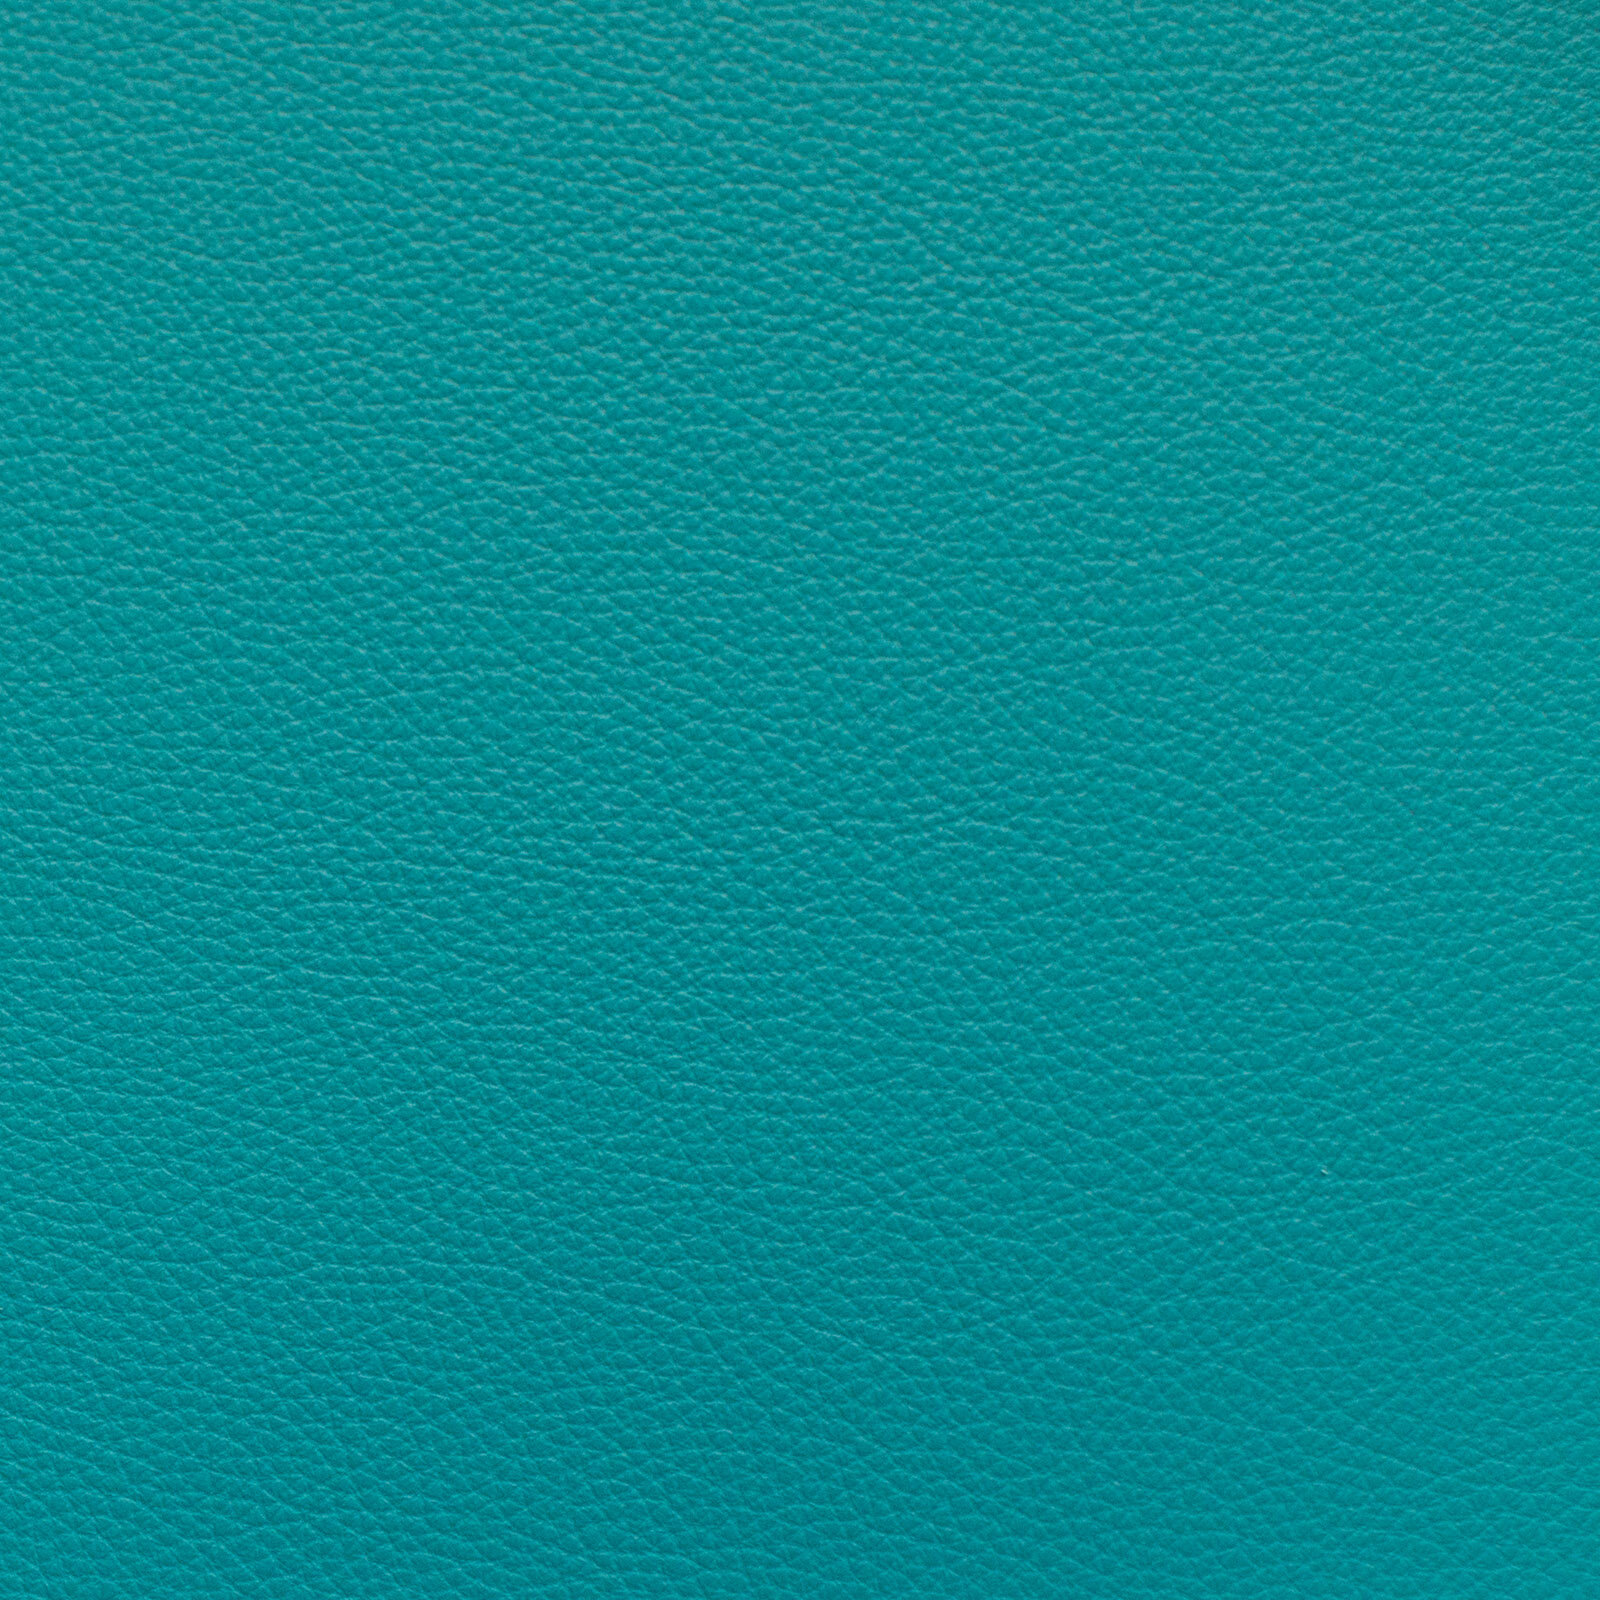 Turquoise (Copy)